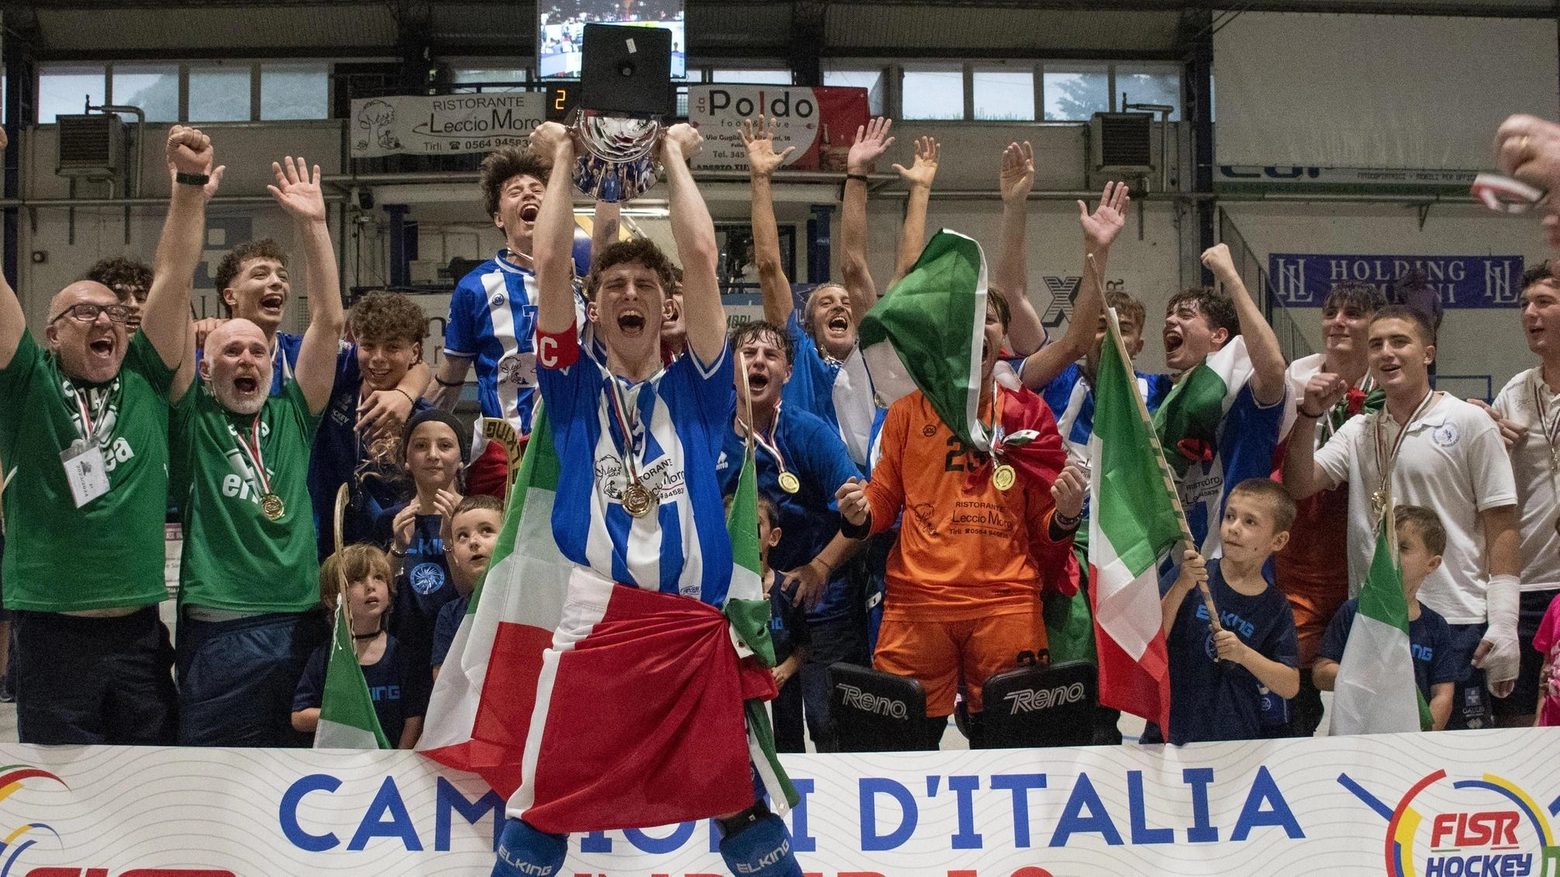 Il gruppo guidato da Franco Polverini ha conquistato il quinto scudetto giovanile nell’Under 19. Fin dall’Under 13 hanno collezionato solo successi e consensi. Il tecnico: "Qualcuno di loro farà tanta strada".